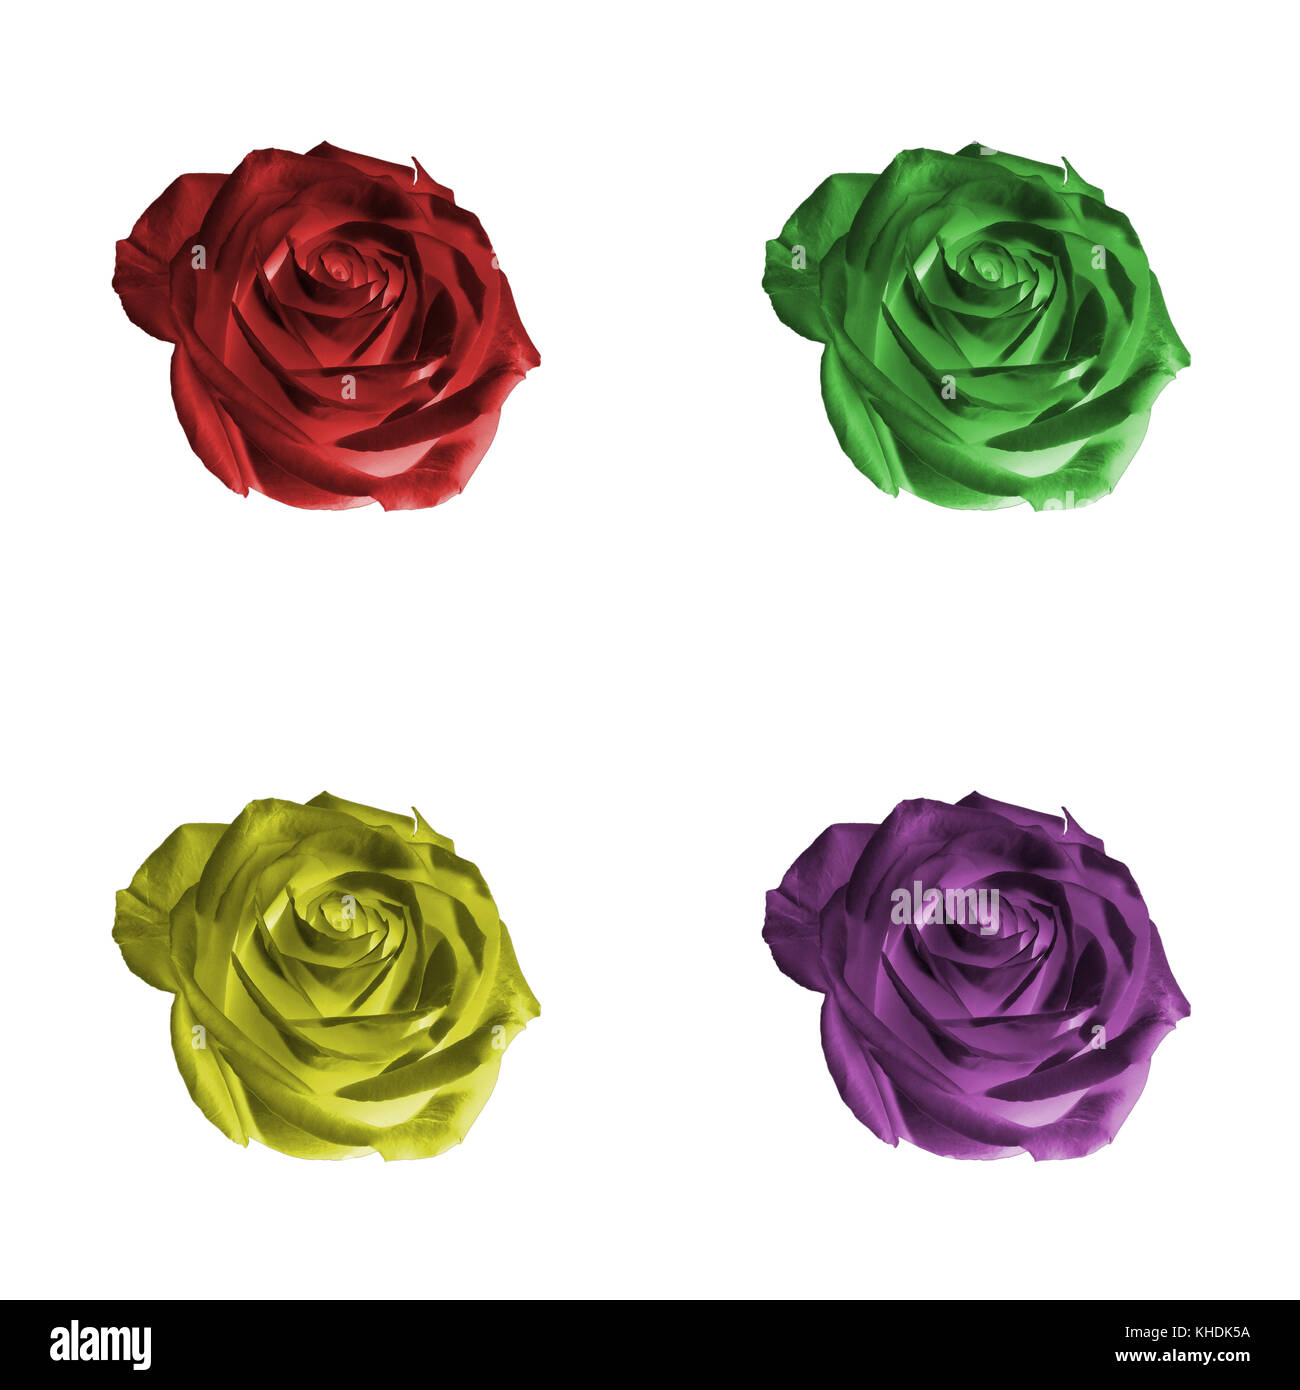 Motivo floreale o sullo sfondo: set di quattro colori decorativi (rosso, verde, giallo, viola, viola) fiori - rose - closeup (close up) isolati su whi Foto Stock